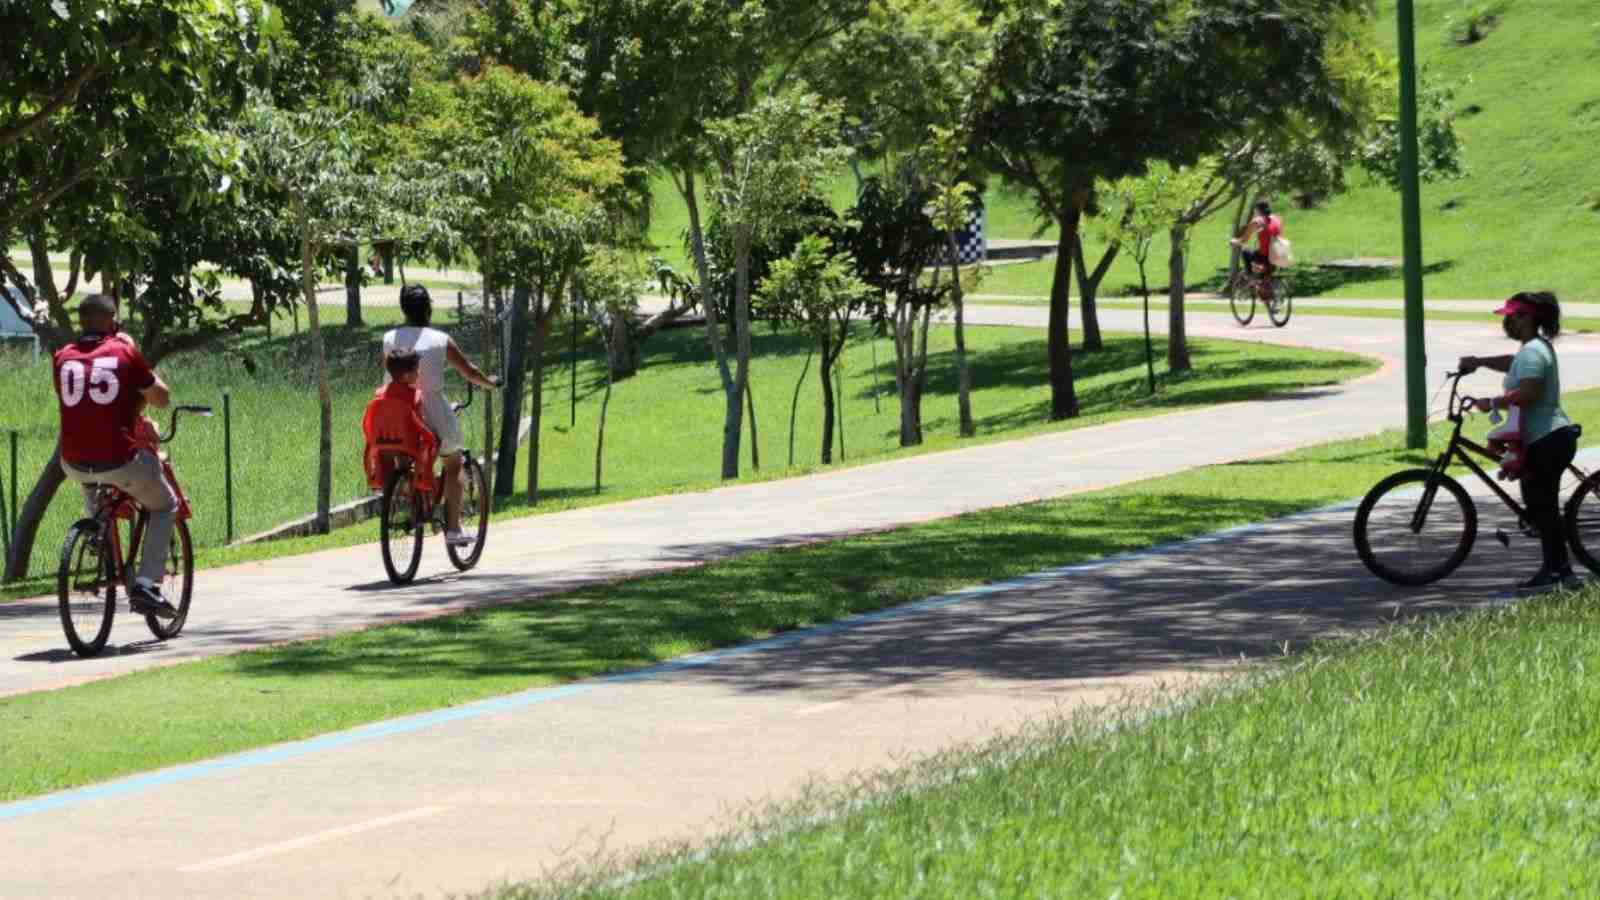 Aluguel de bicicletas no Parque da Cidade de Jundiaí